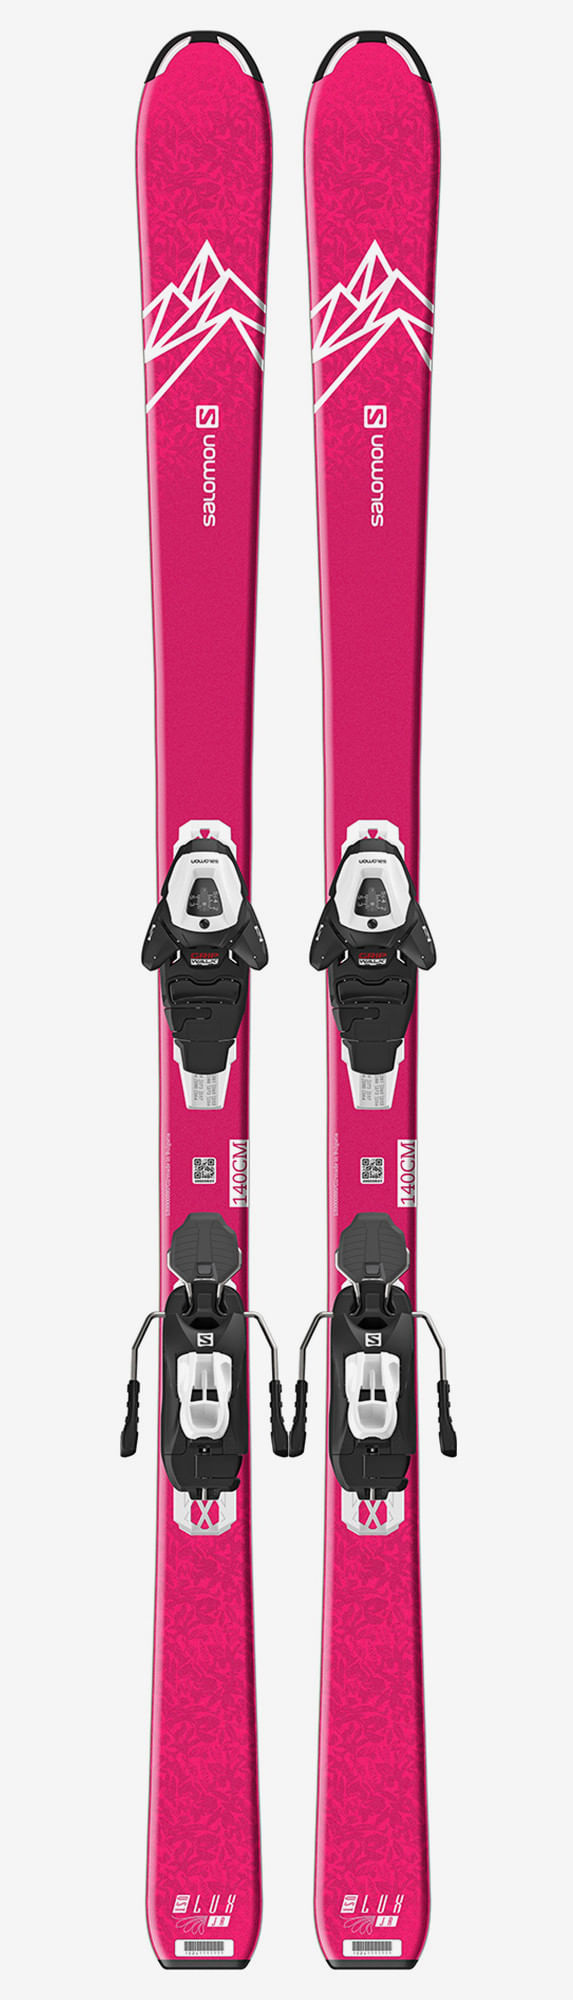 Salomon-QST-Lux-Jr.-M-Kids-Skis-with-L6-GW-Bindings-2021